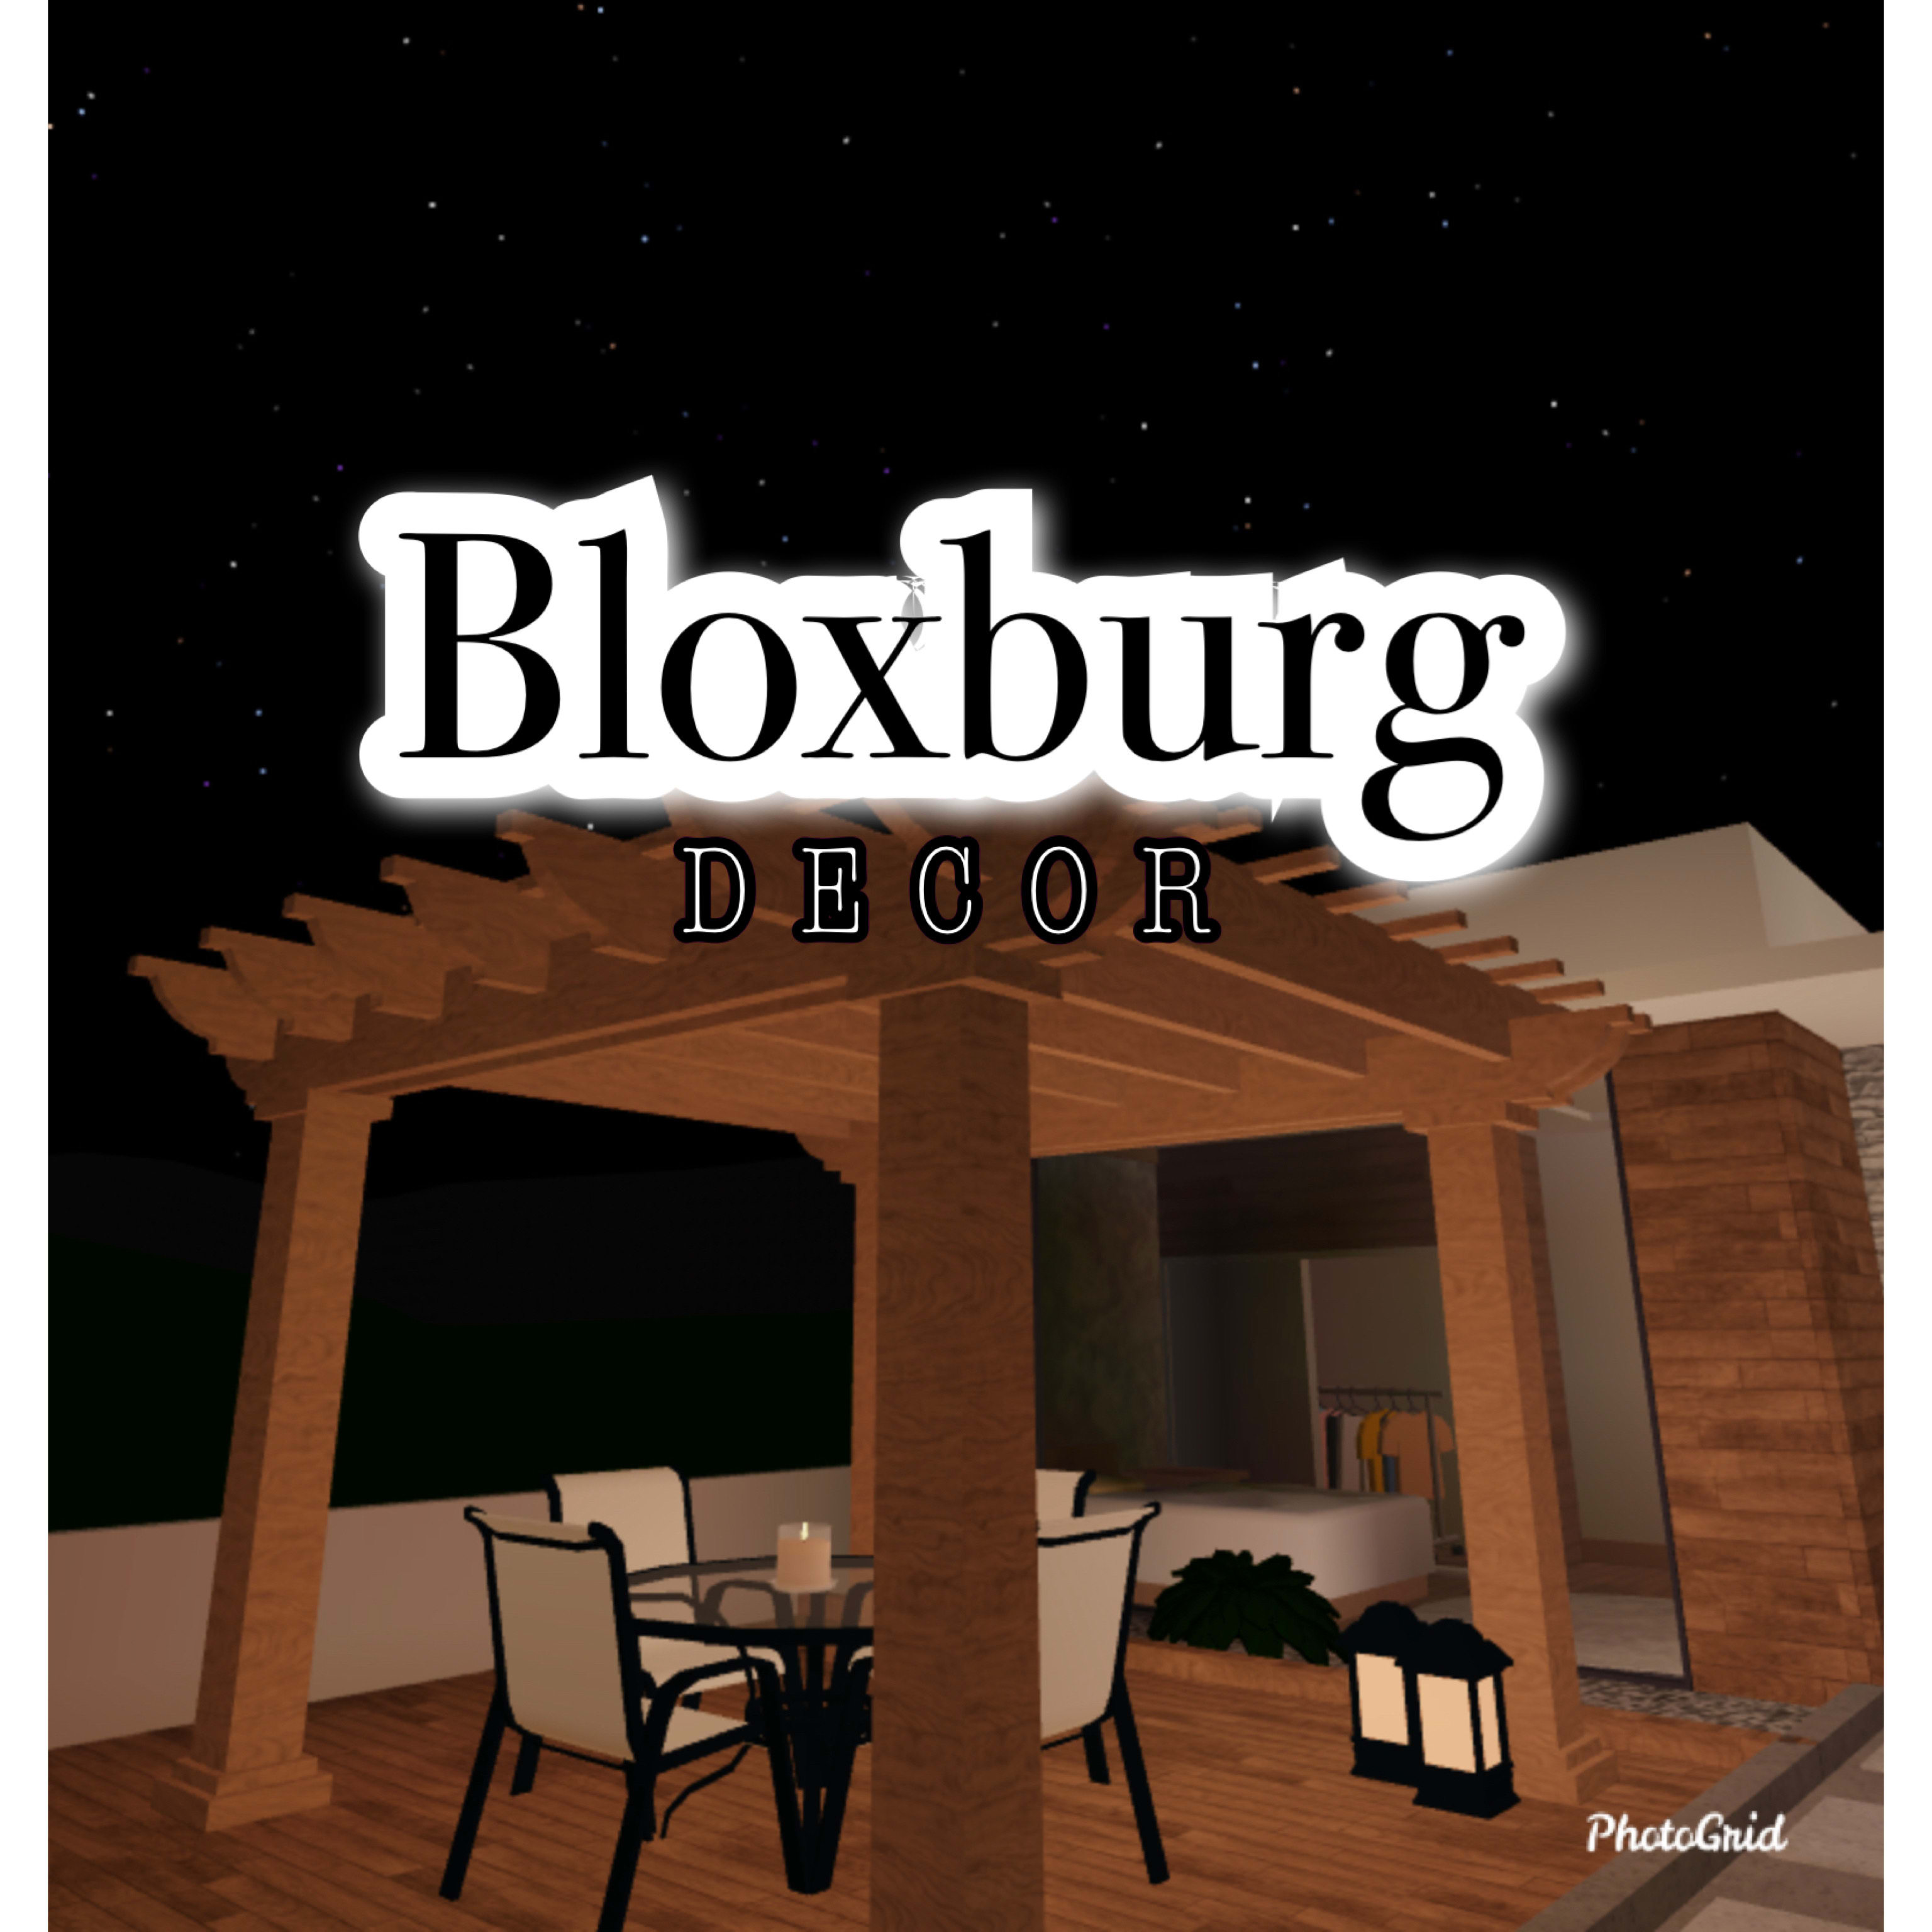 Decore your bloxburg house by Lulisx | Fiverr